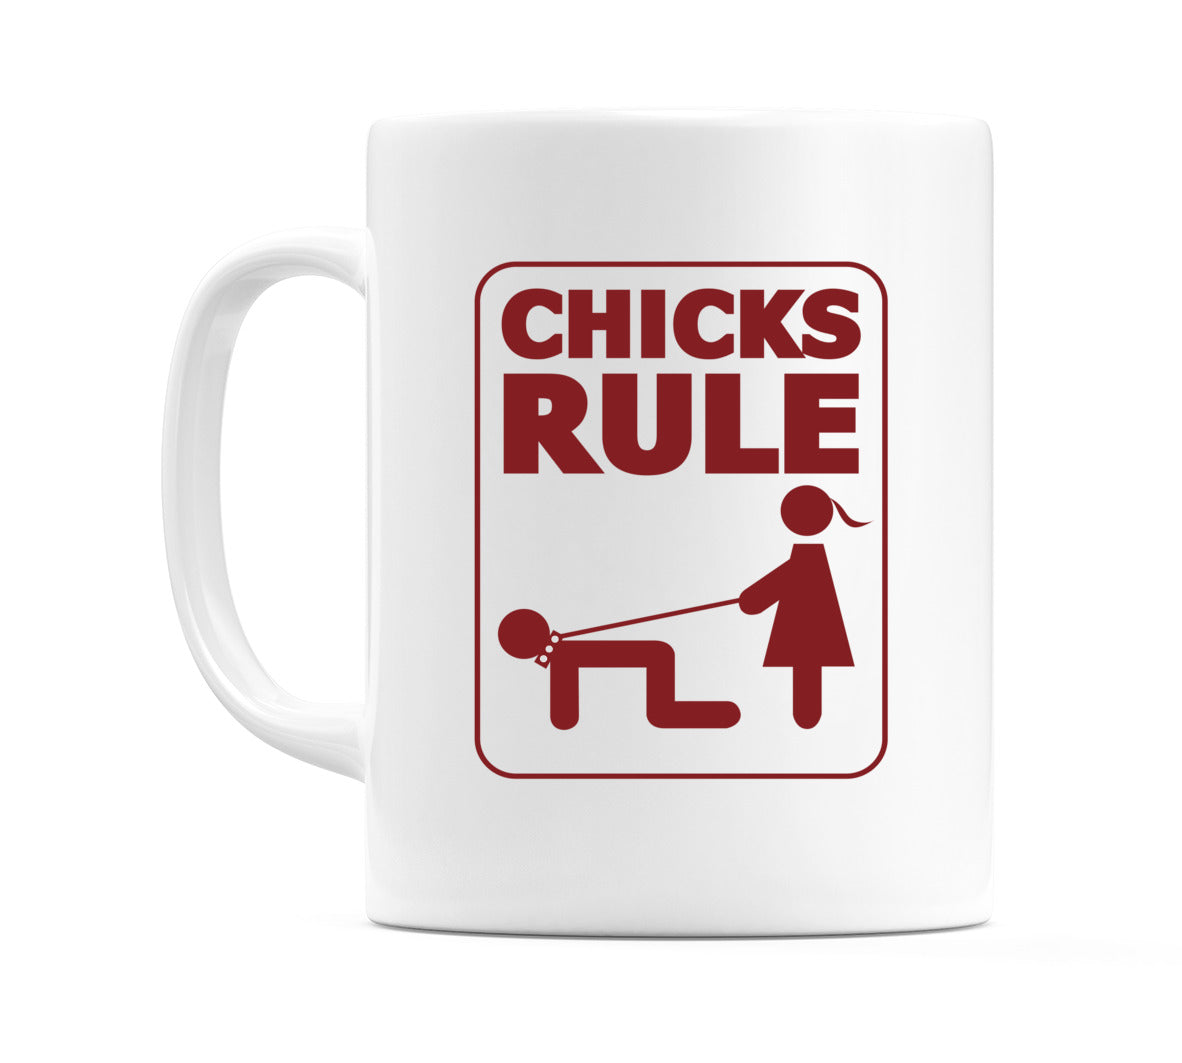 Chicks Rule Mug